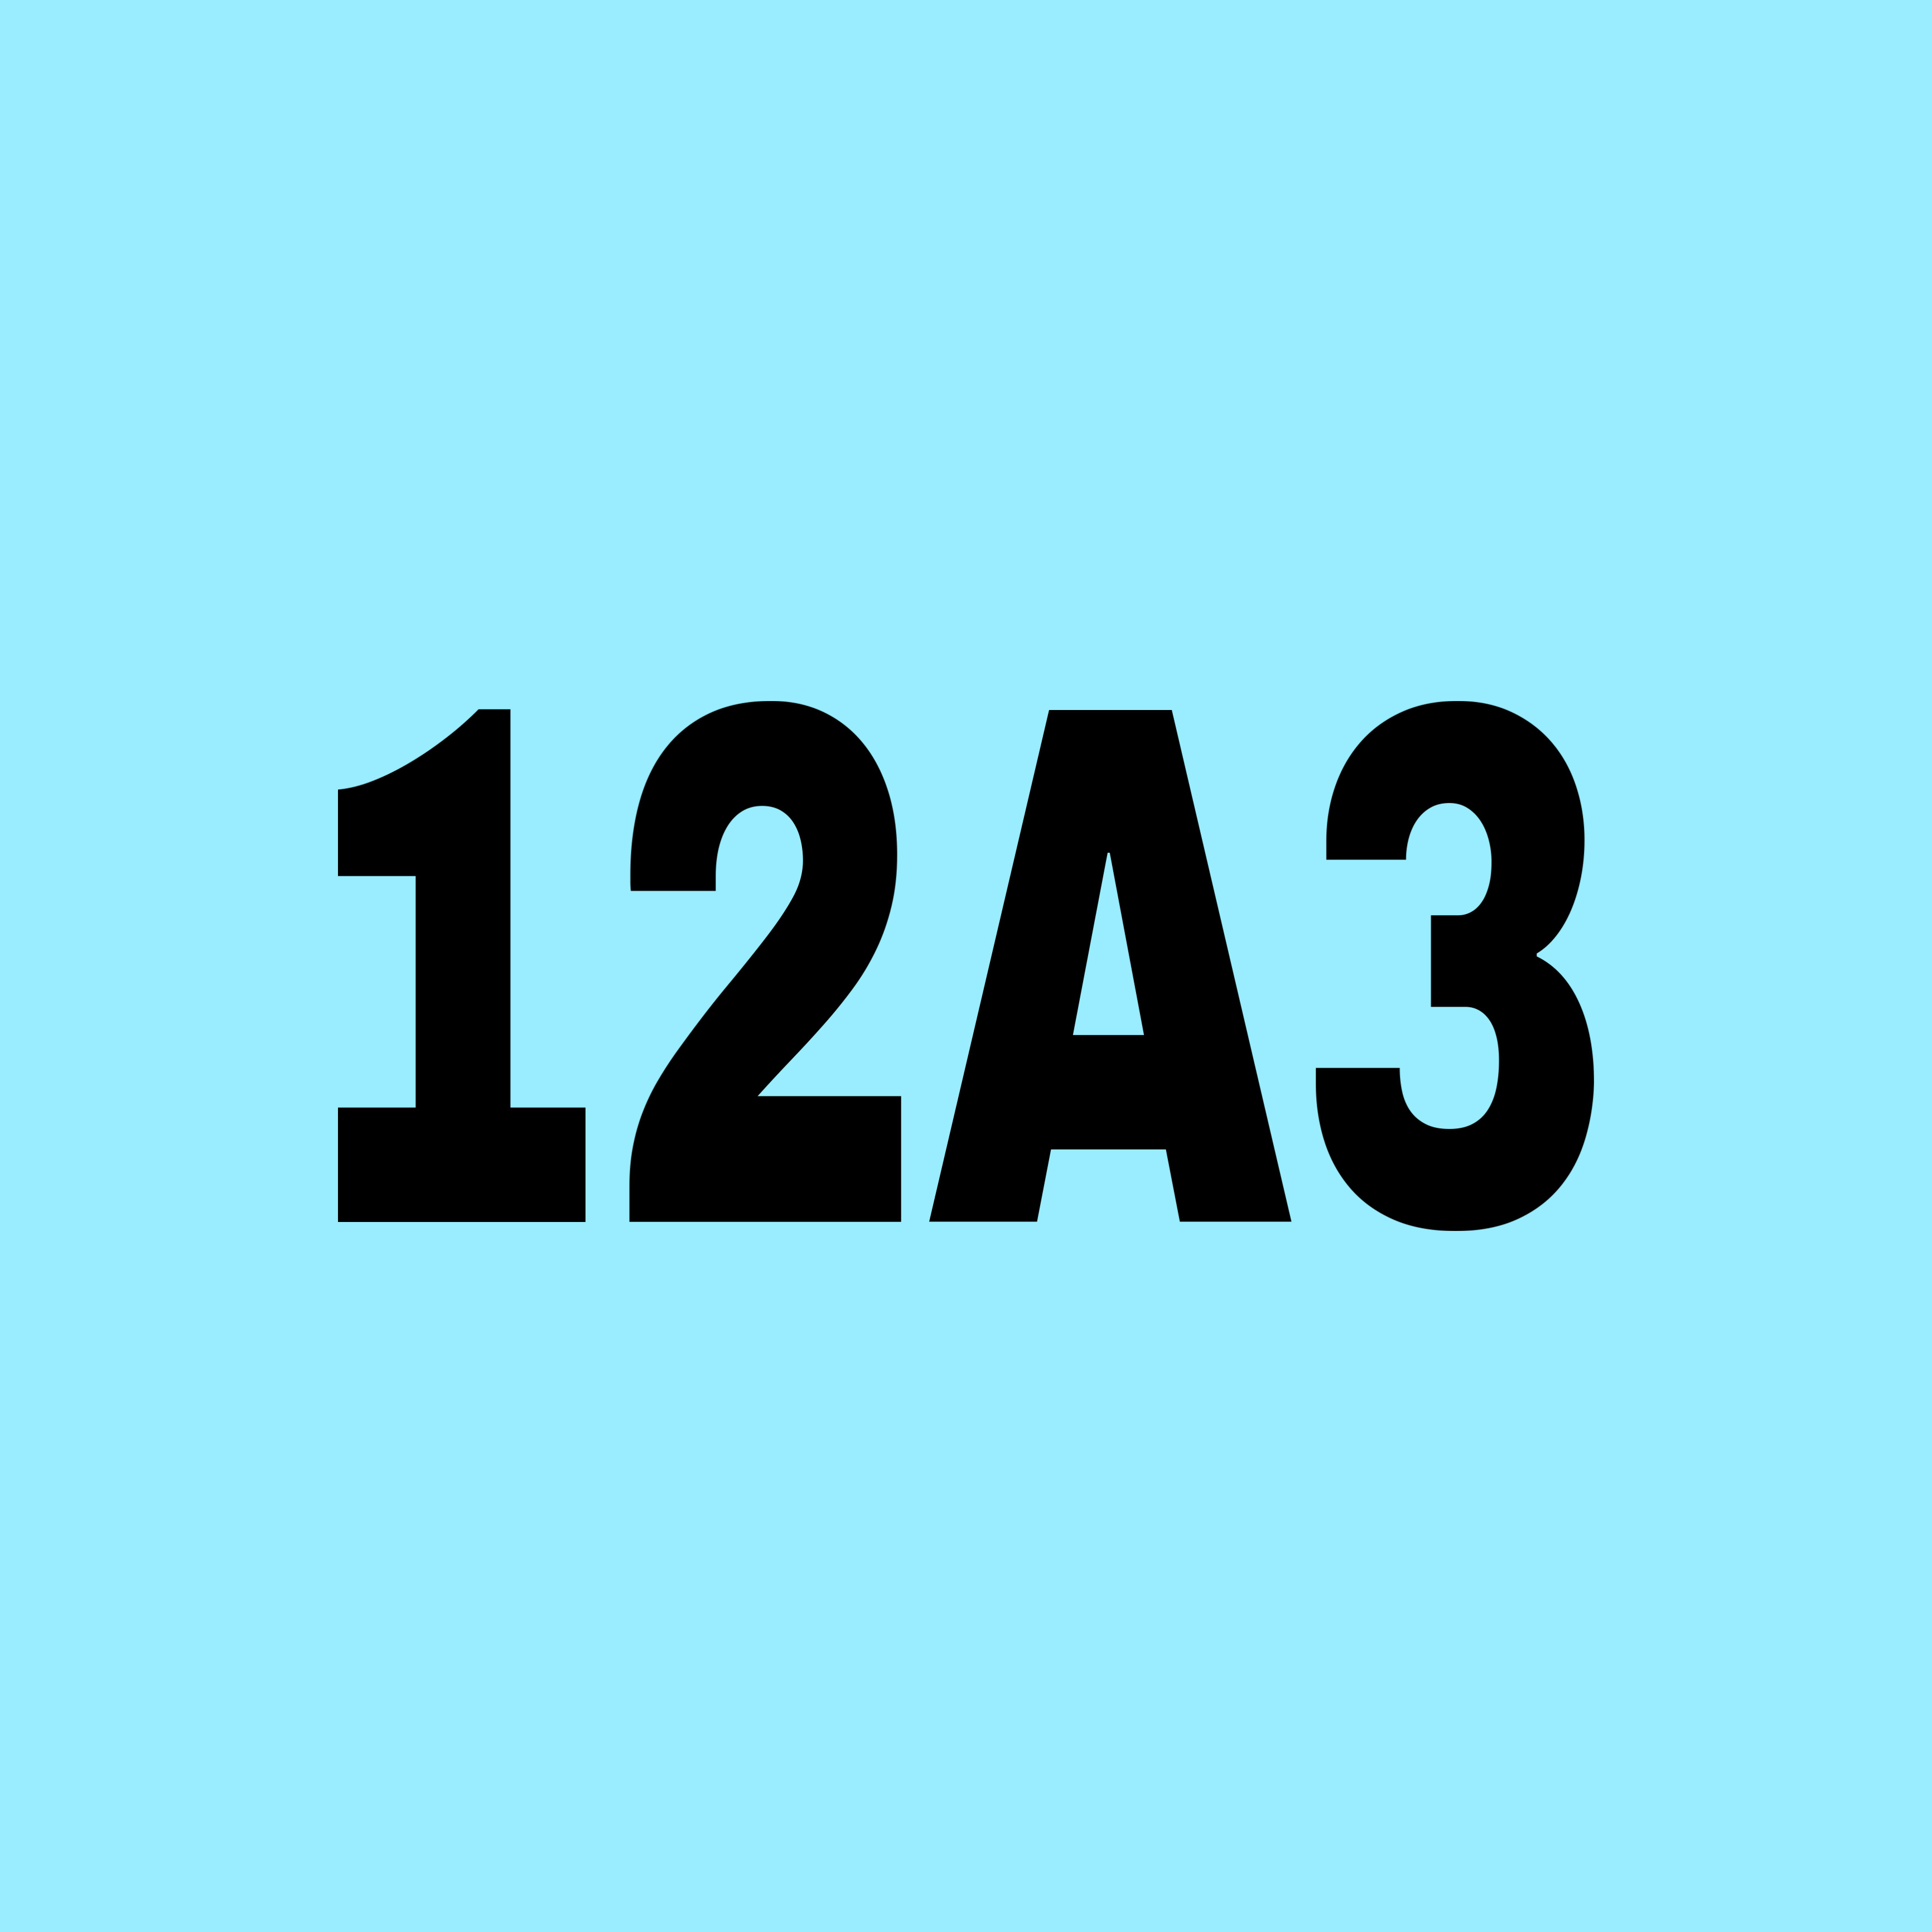 12A3